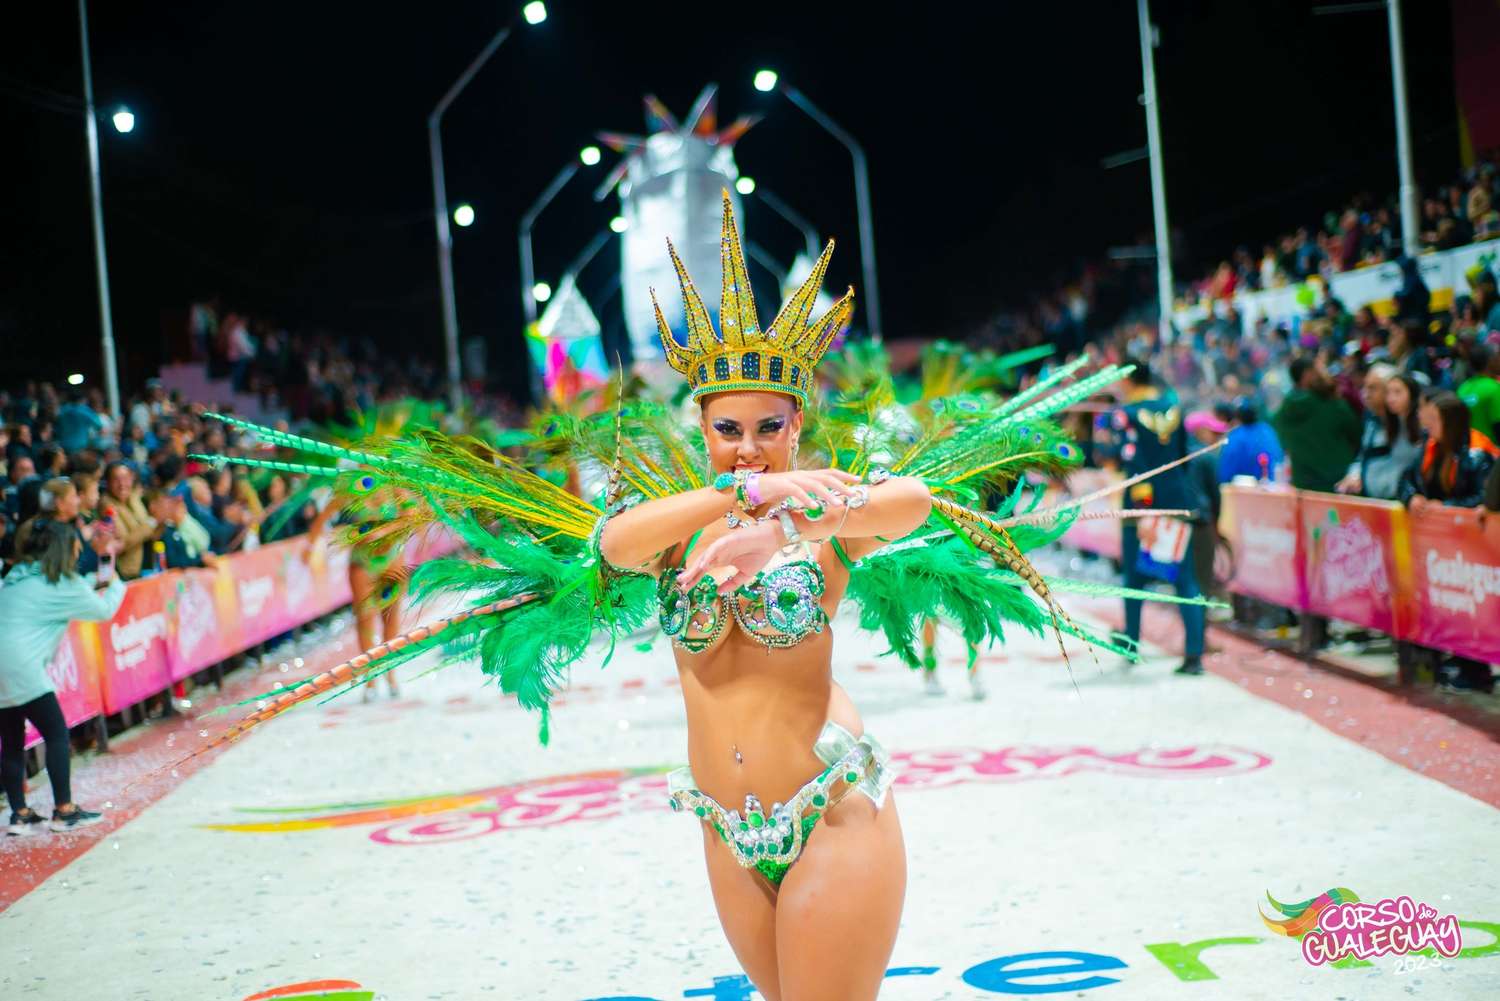 Extraordinario fin de semana de Carnaval se vive en Gualeguay